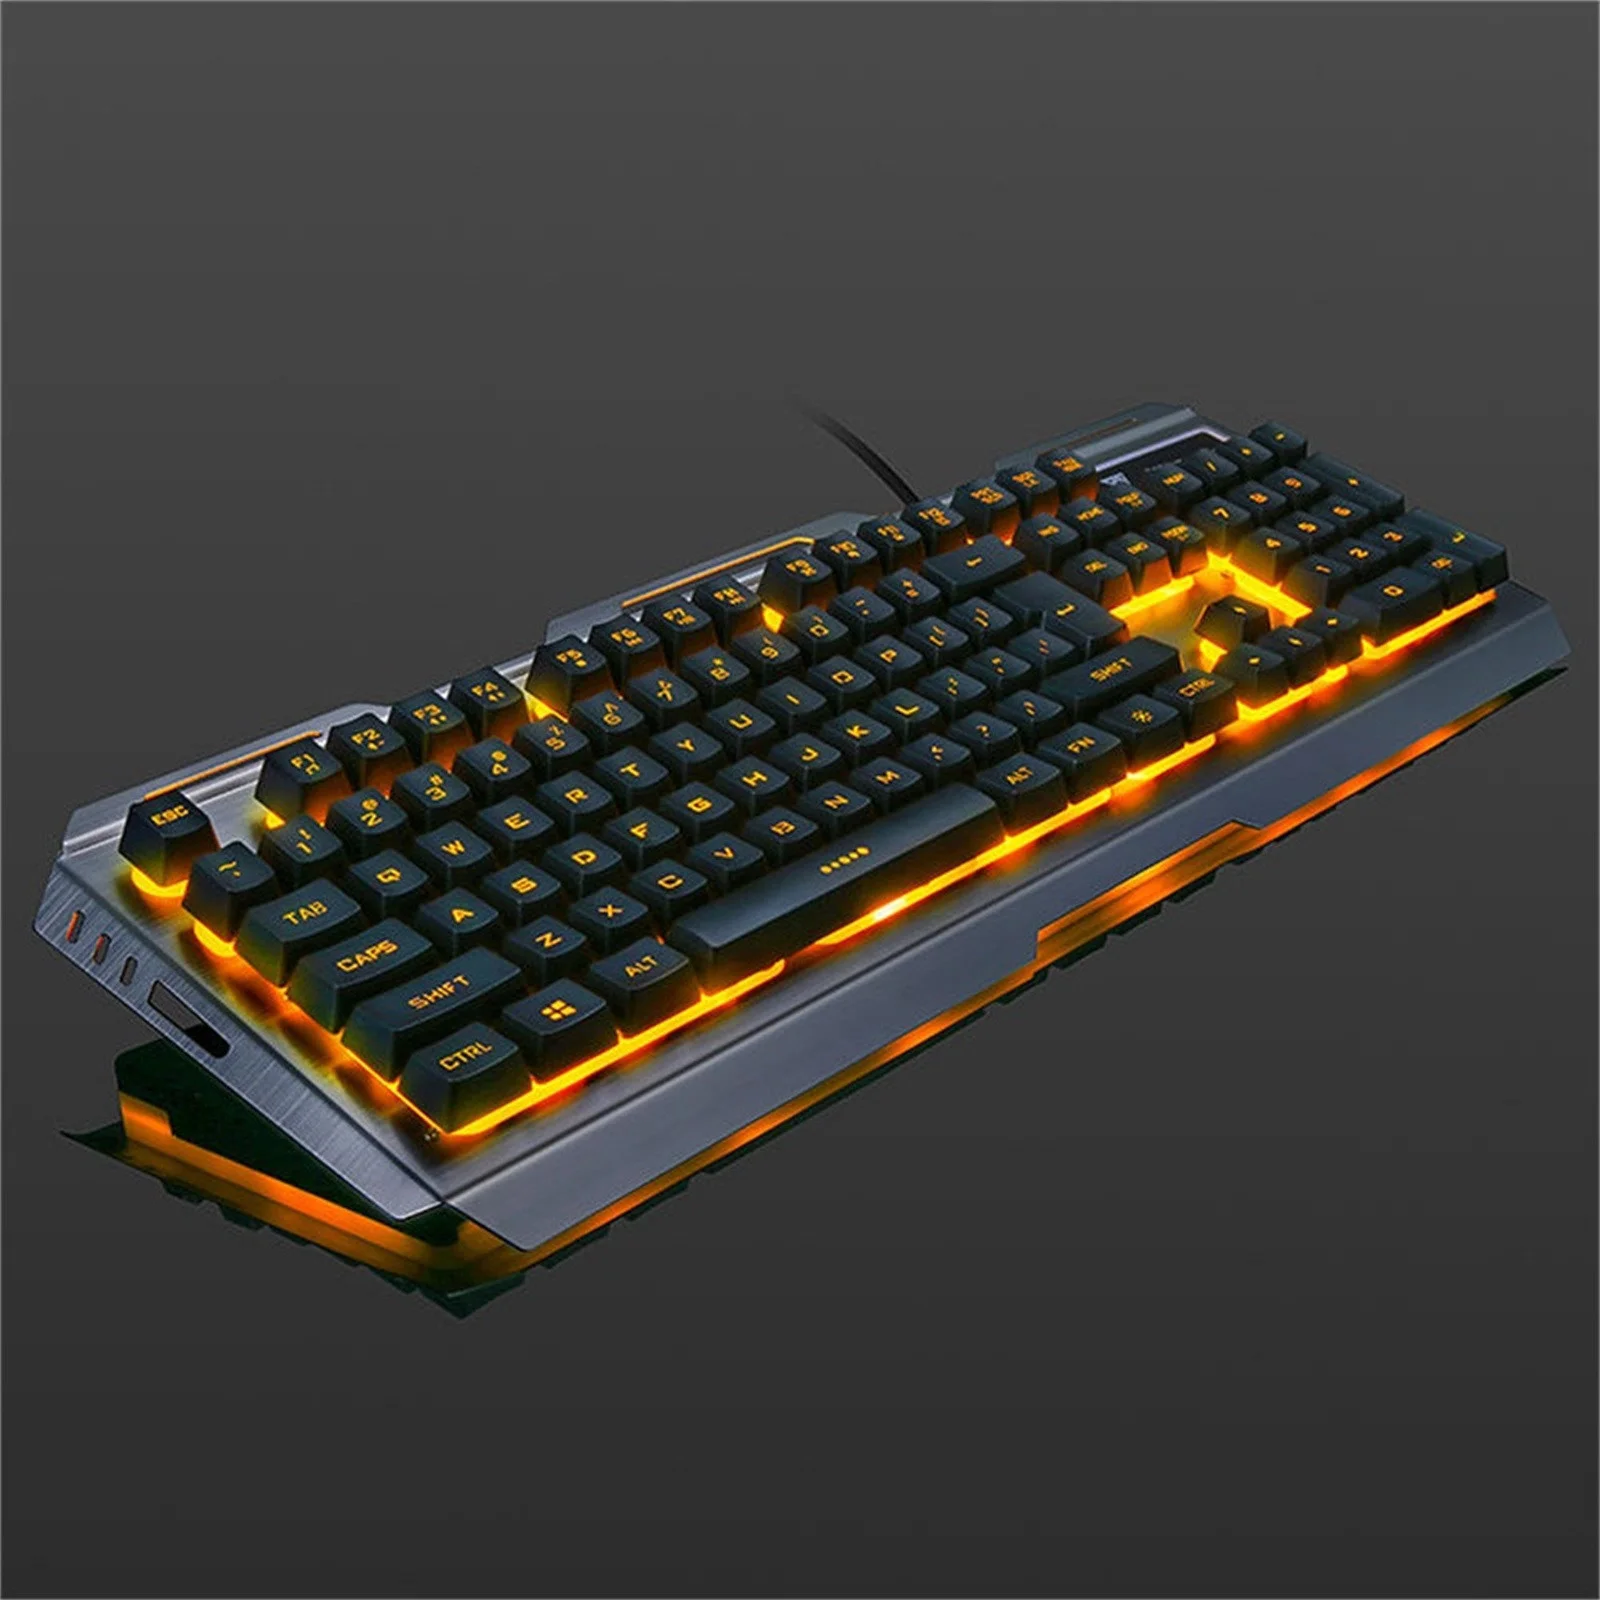 

V1 Набор клавиатуры и мыши, Игровая клавиатура, механическая клавиатура и мышь, 104 клавиш, USB Проводная RGB светодиодный мышь и Набор клавиатуры